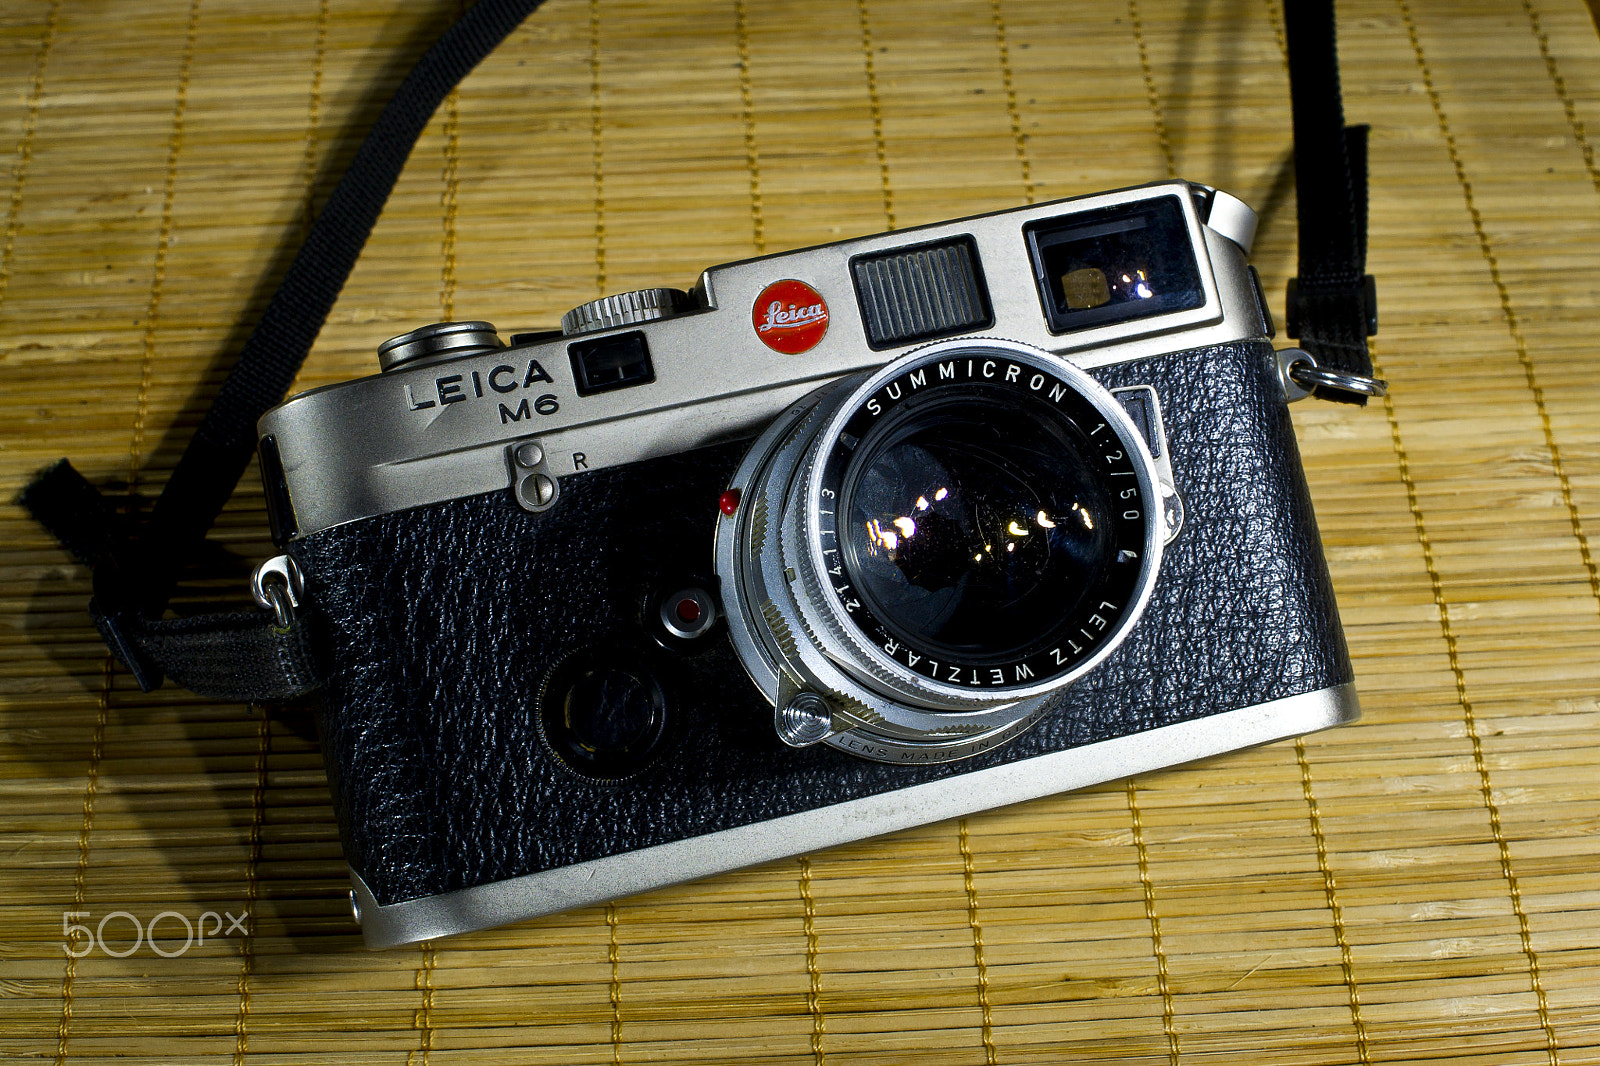 Sony Alpha DSLR-A500 + Sony DT 35mm F1.8 SAM sample photo. Leica m6 photography